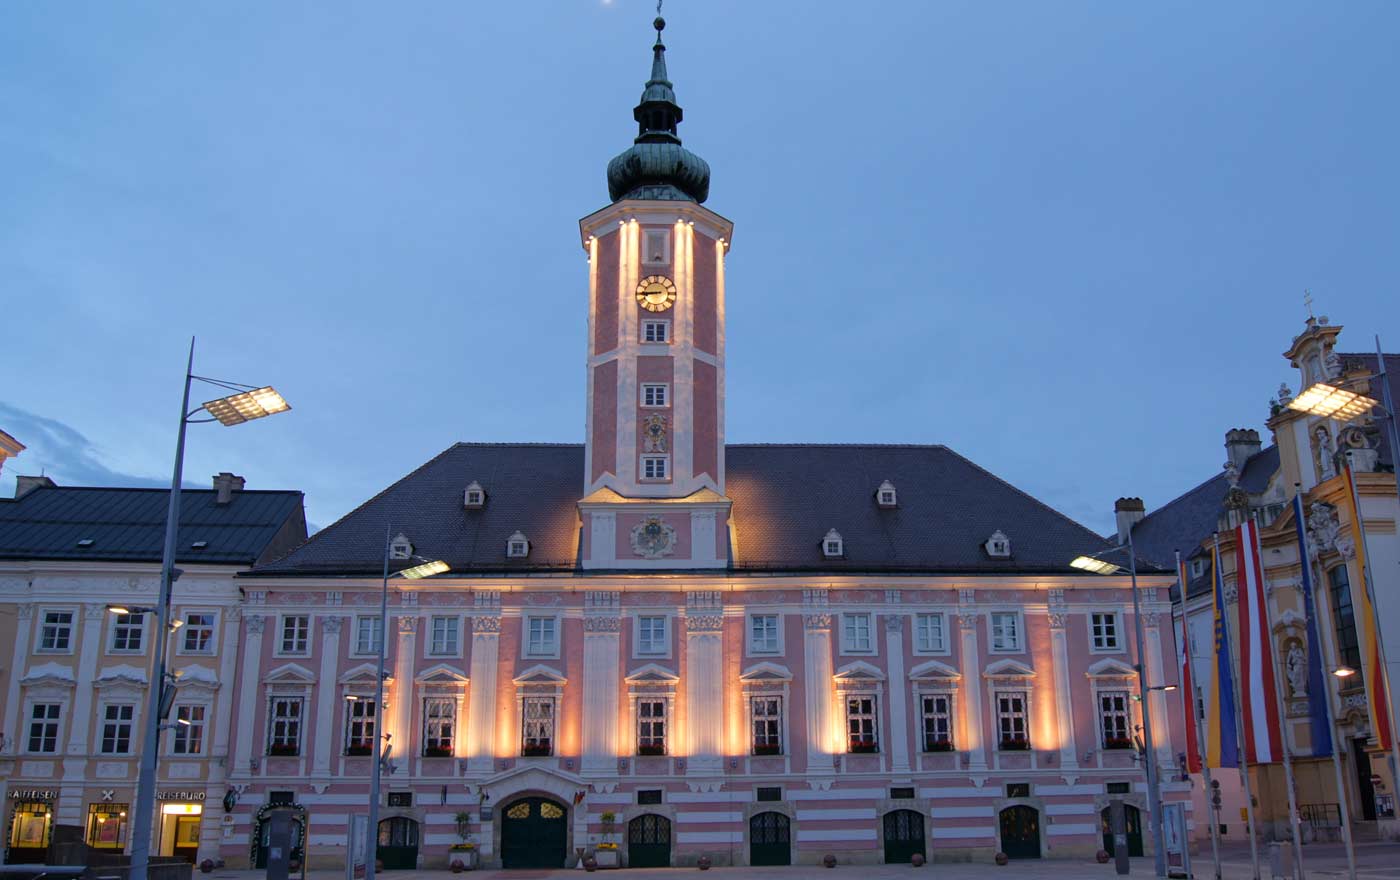 Am Freitag sind die Synodalen zu einem Empfang im St. Pöltner Rathaus geladen. Die niederösterreichische Landeshauptstadt ist seit 2017 offizielle Reformationsstadt. Foto: wikimedia/AleXXw/cc by sa 3.0